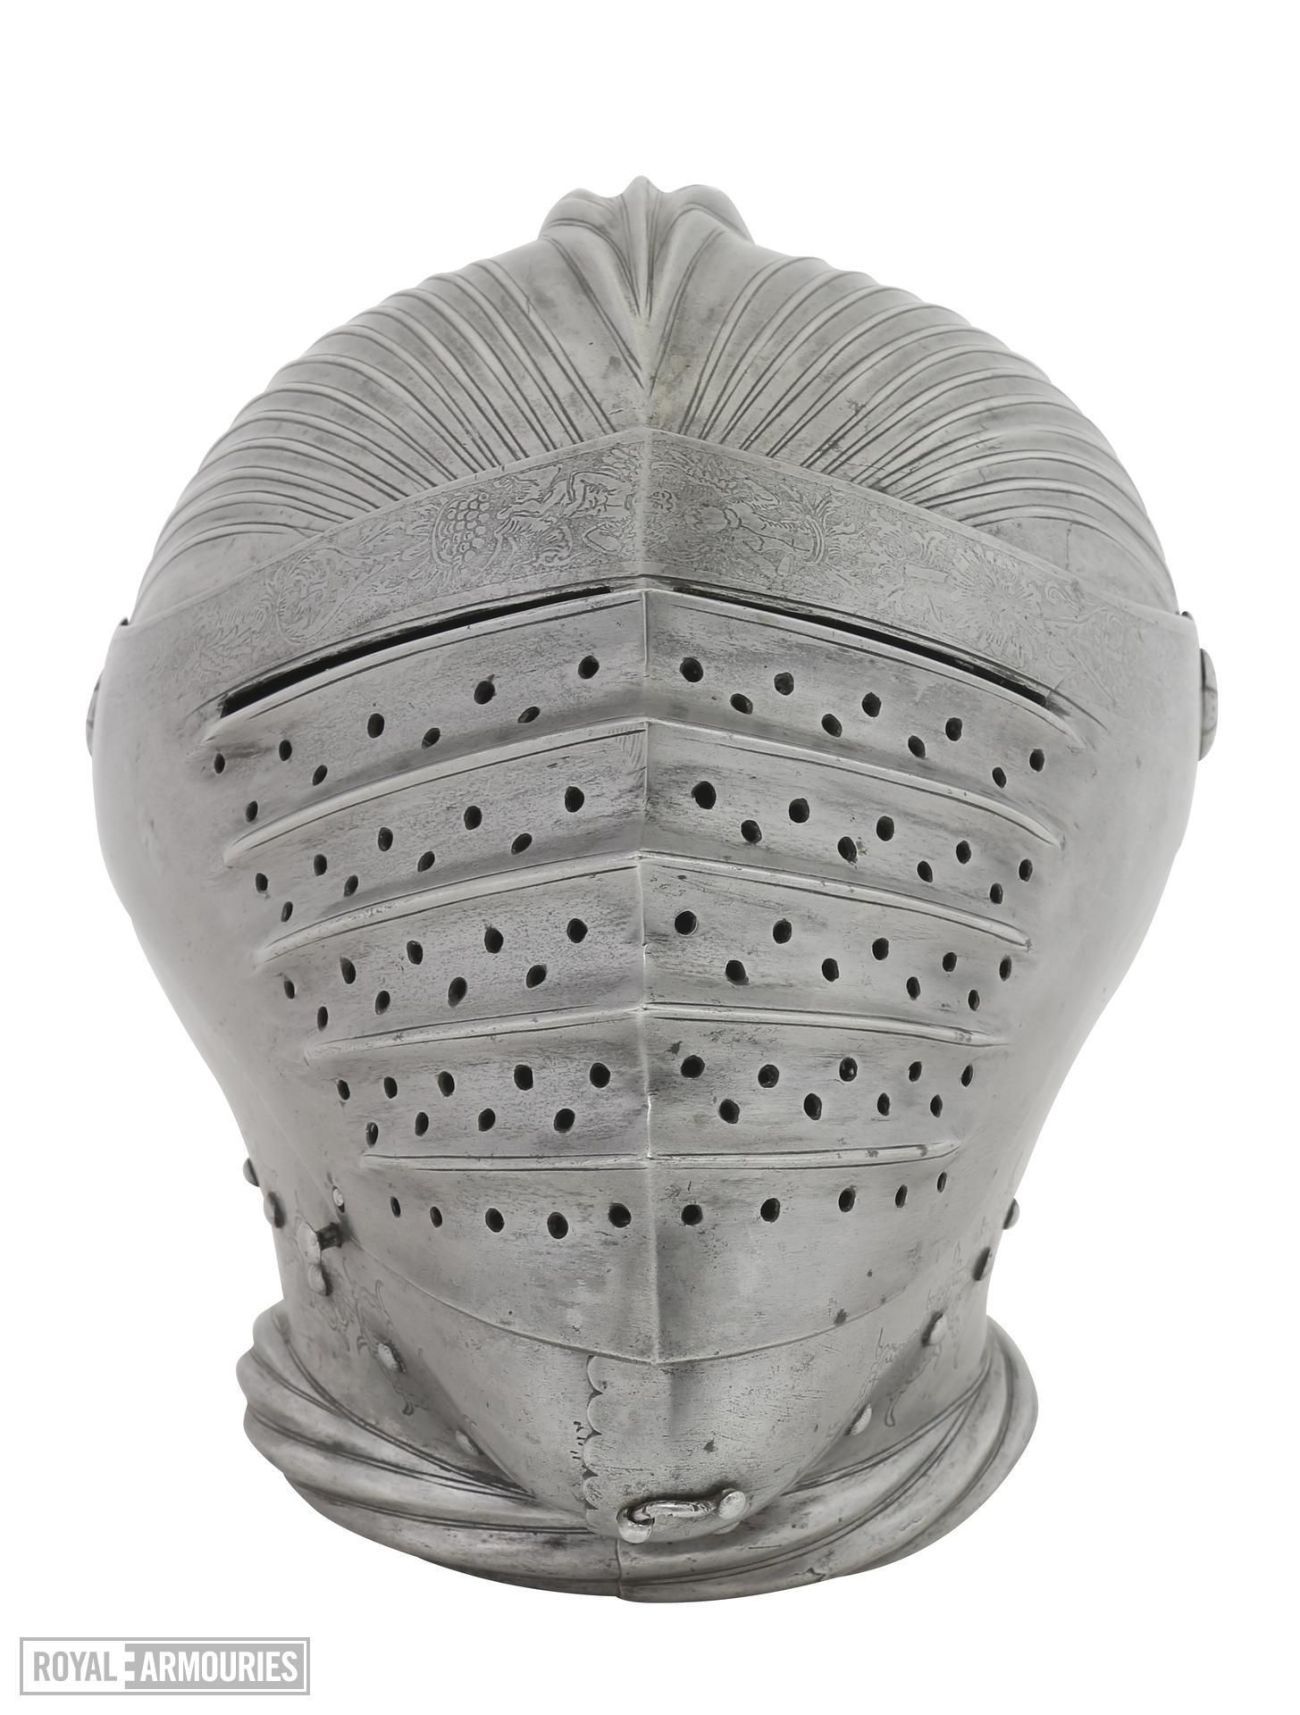 A knights combat helmet